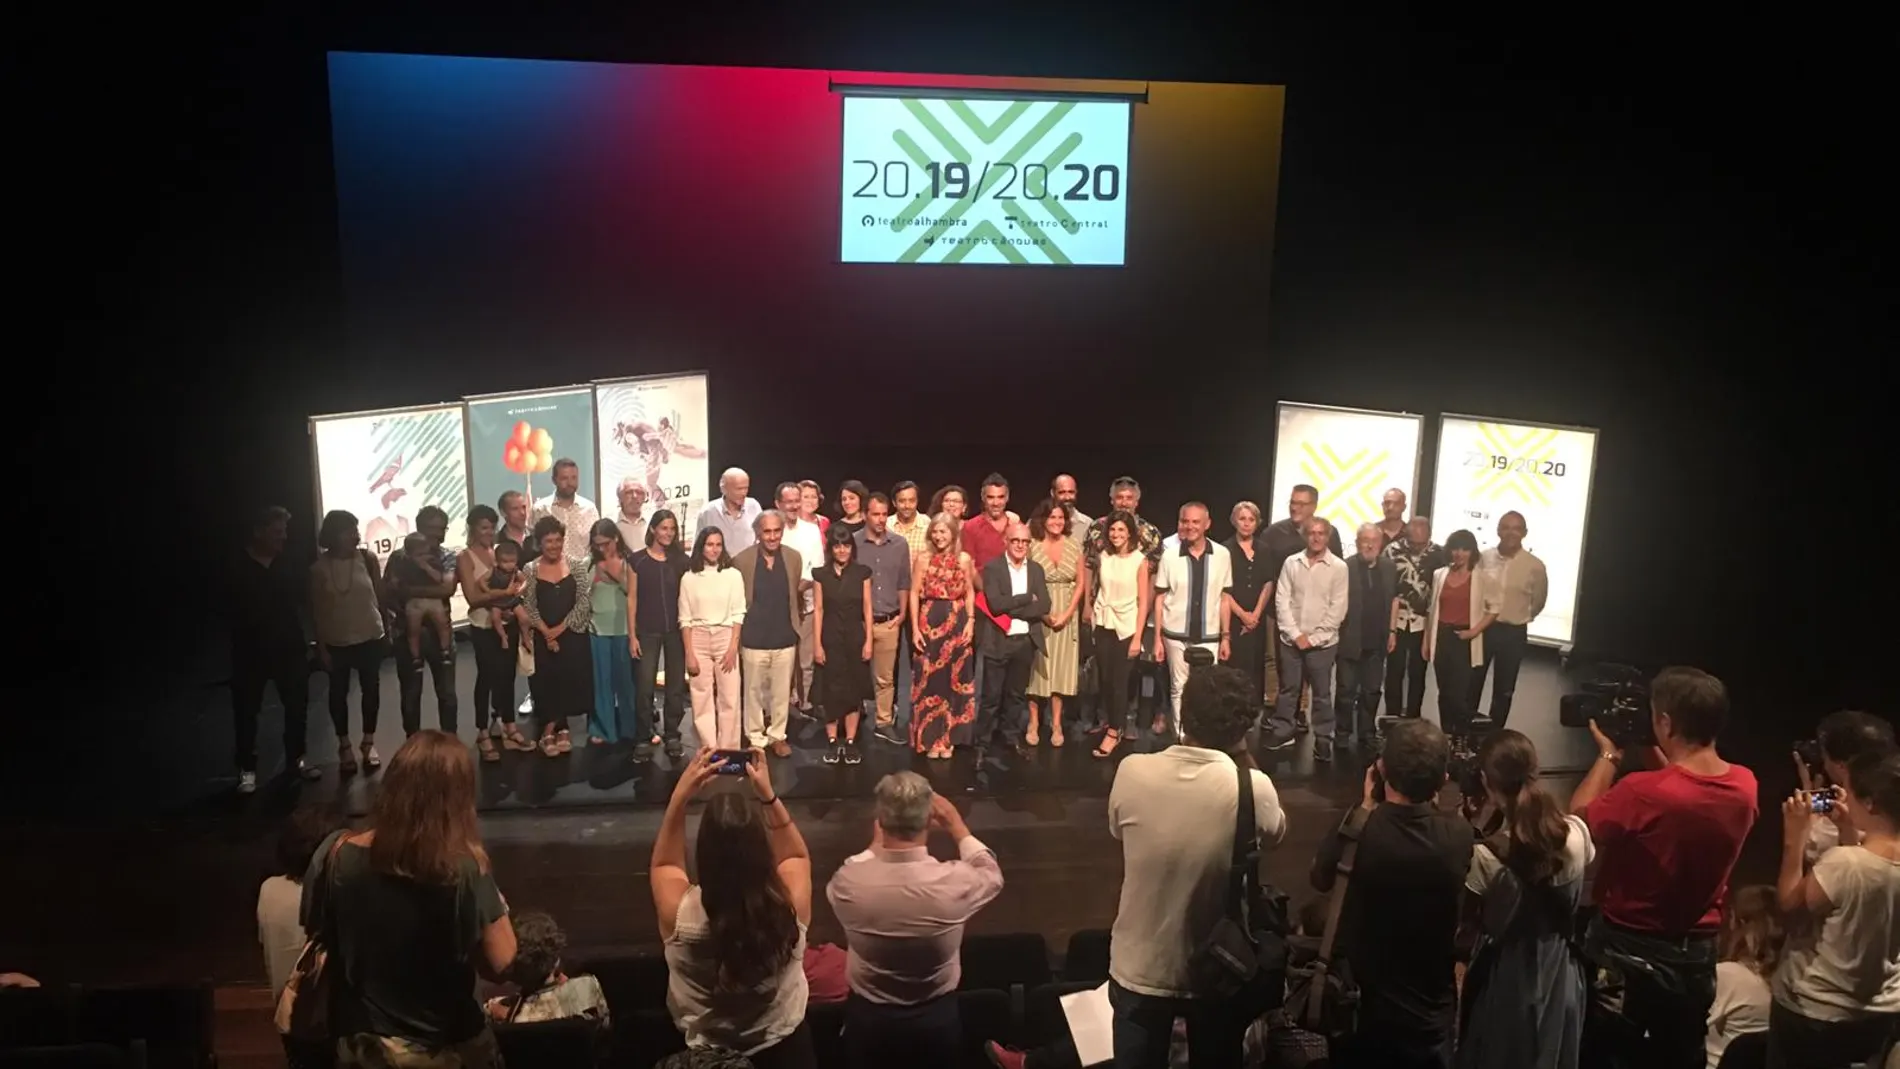 Presentación de la programación de la temporada 2019/2020 en los teatros gestionados por la Junta de Andalucía / Foto: La Razón